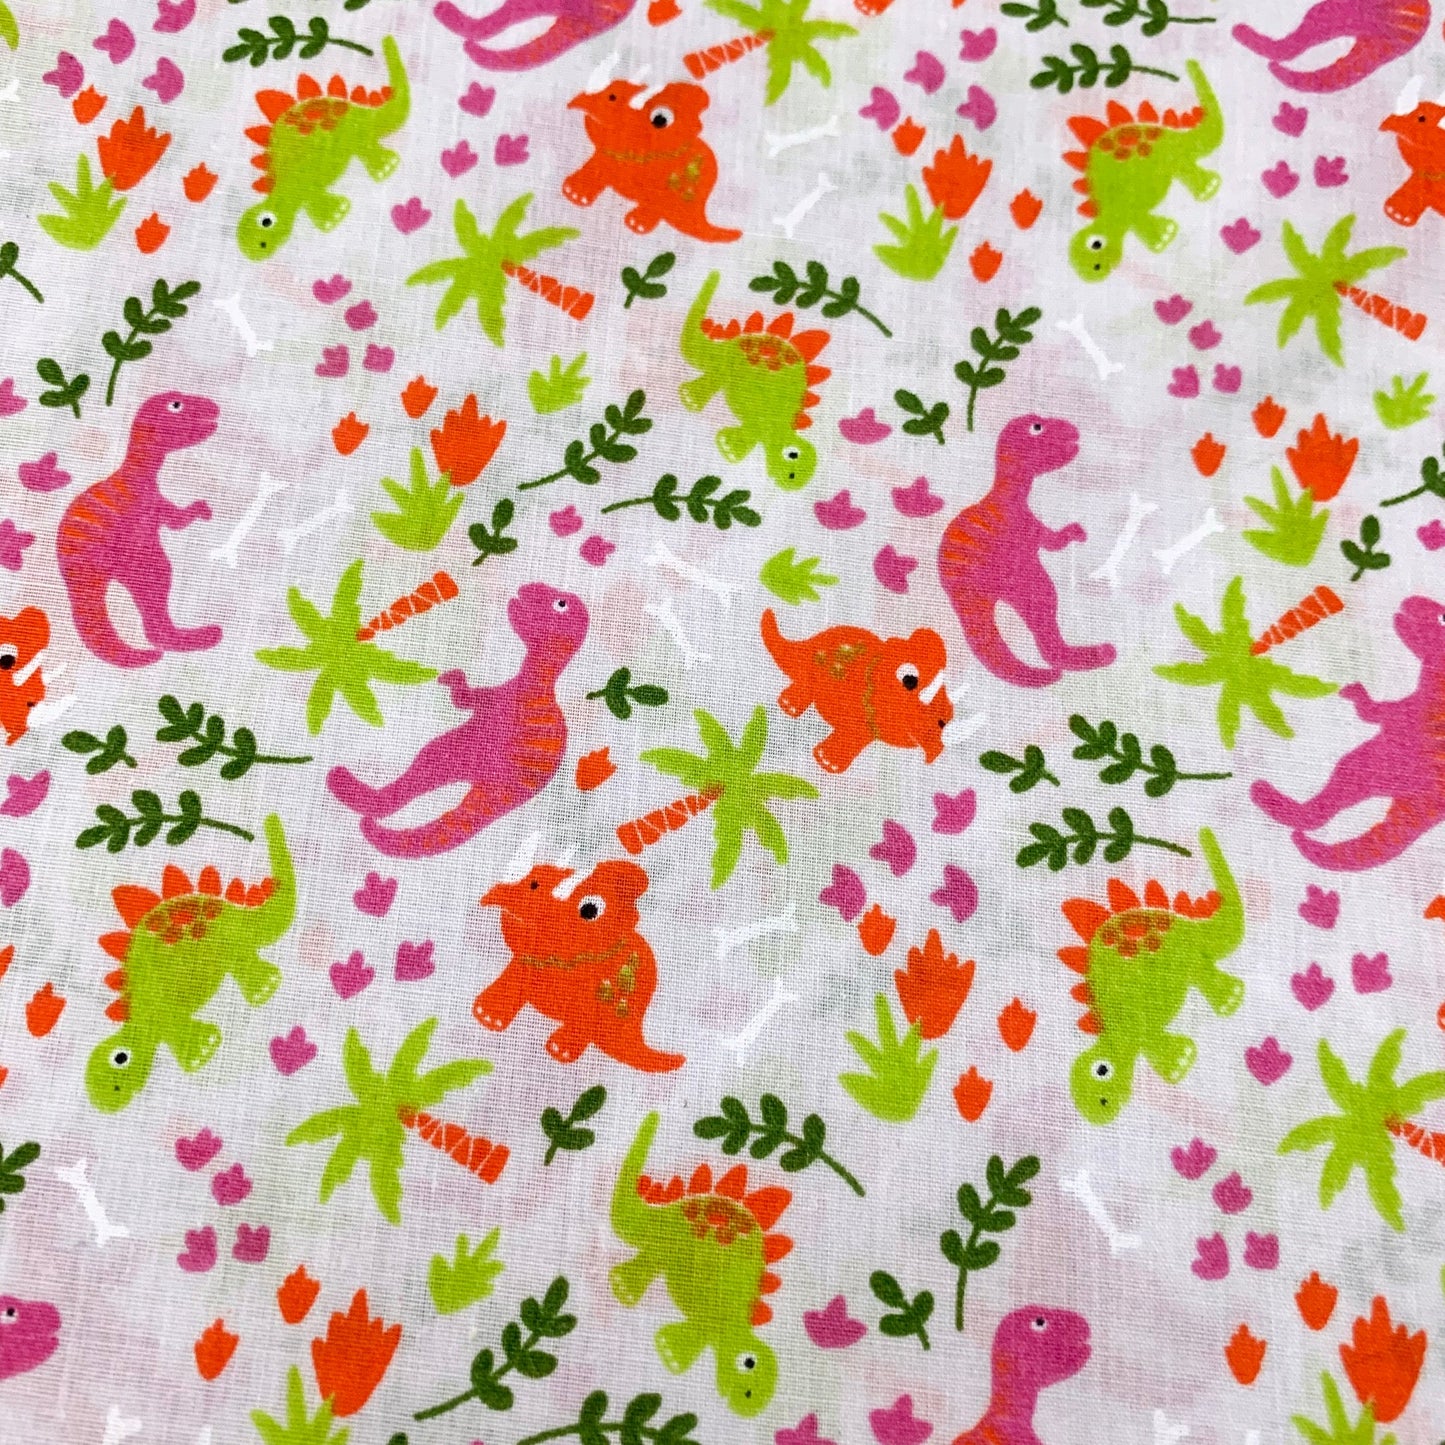 Fabric Felt Sheet - Jungle Dinosaurs - Pink